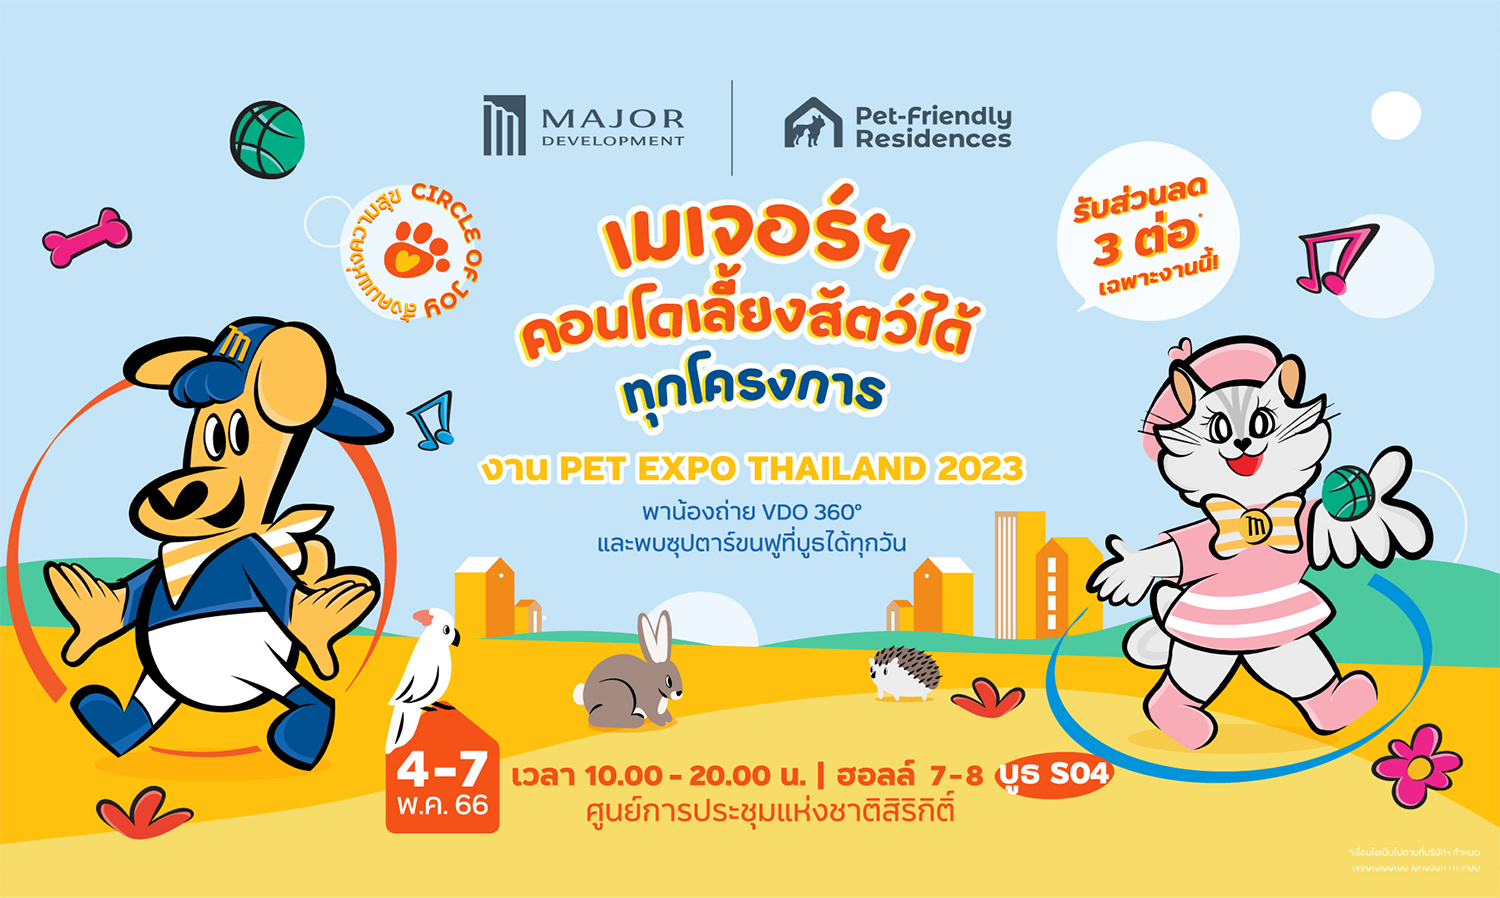 เมเจอร์ ดีเวลลอปเม้นท์ ส่ง CIRCLE OF JOY สังคมแห่งความสุข  สีสันความสนุกครั้งใหม่ ในงาน PET EXPO THAILAND 2023